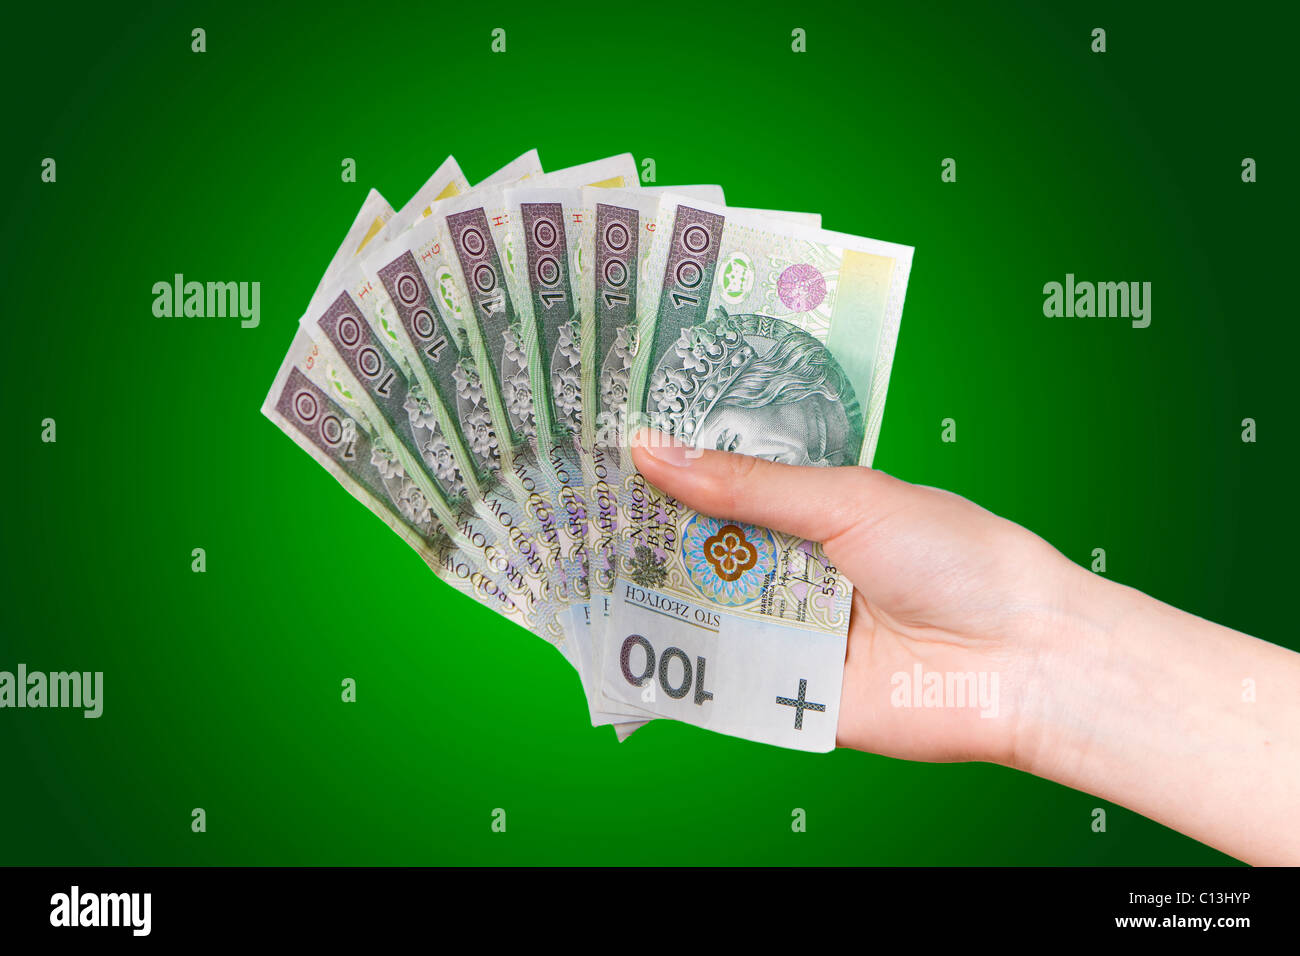 La main avec le polonais de l'argent sur fond vert Banque D'Images